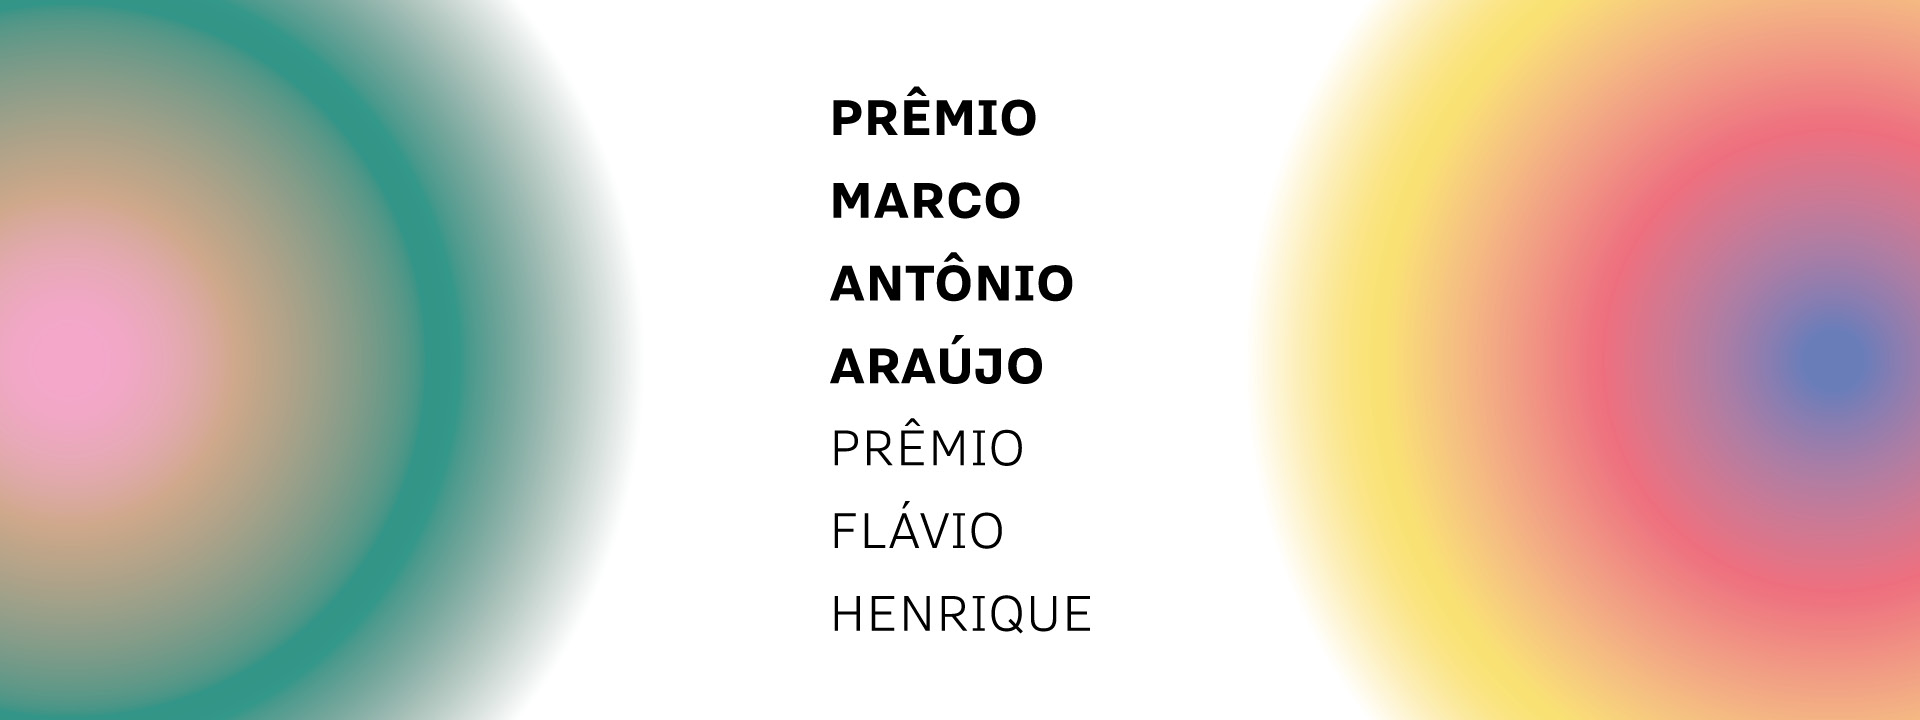 Prêmio Marco Antônio Araújo e Prêmio Flávio Henrique